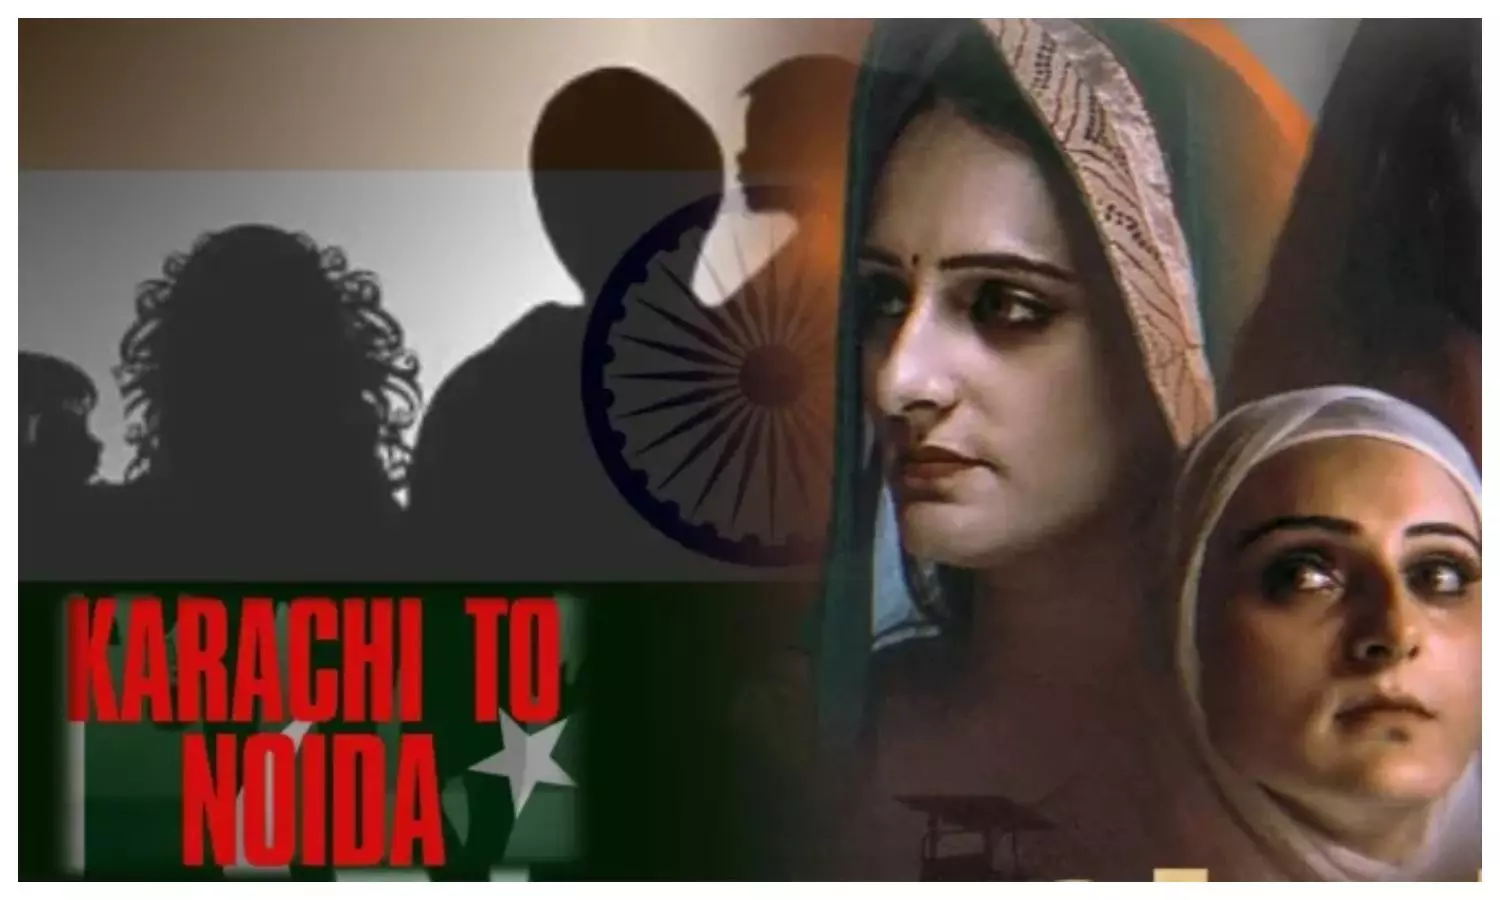 Karachi to Noida: पाकिस्तानी से आई सीमा हैदर पर बन रही फिल्म कराची टू नोएडा का टाइटल विवाद खत्म